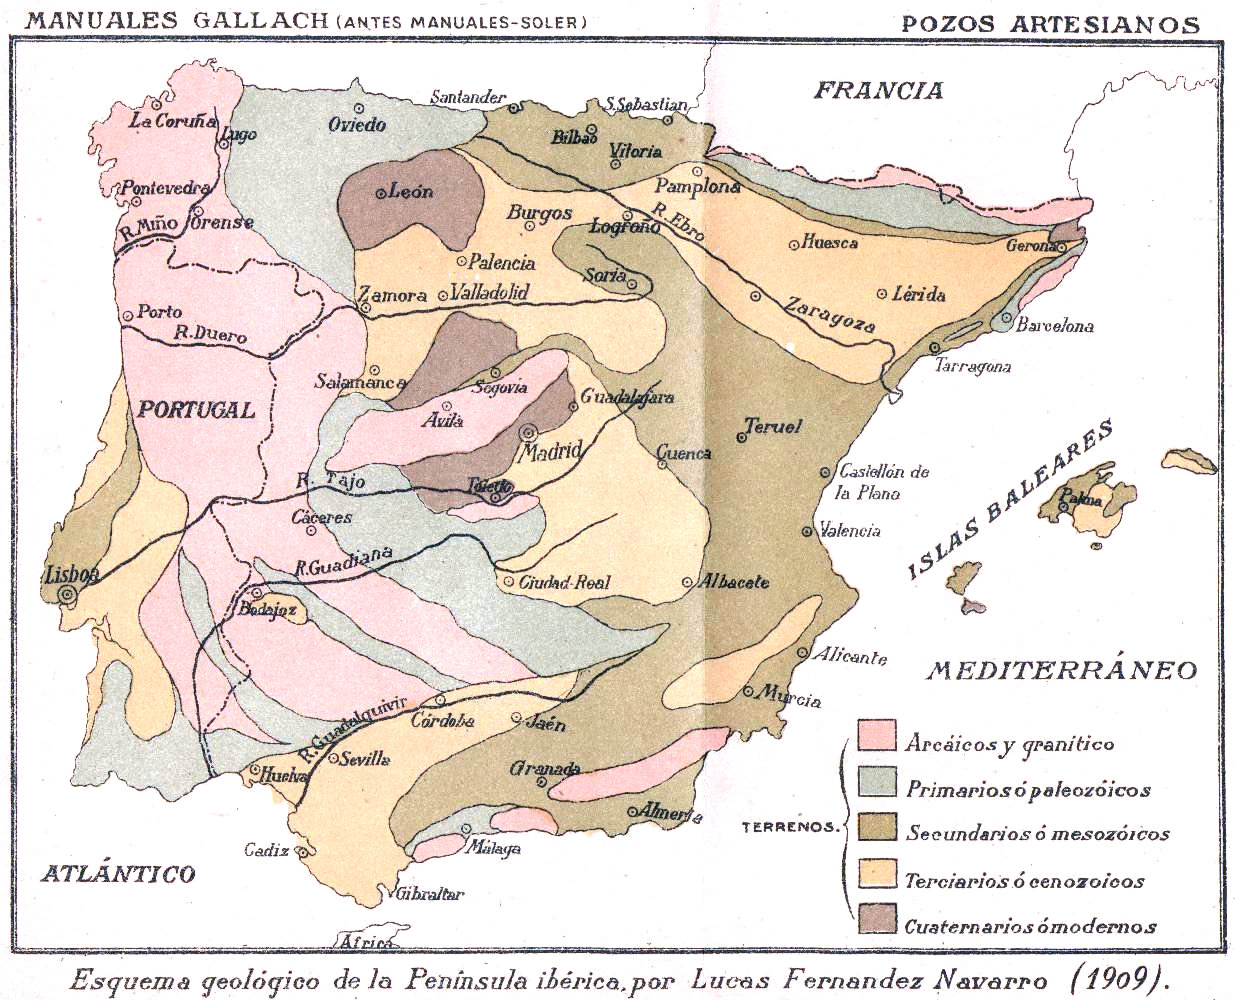 Elementos de Historia Natural por Emilio Ribera Gómez. Lámina 10. Mapa Geológico de España y Portugal.